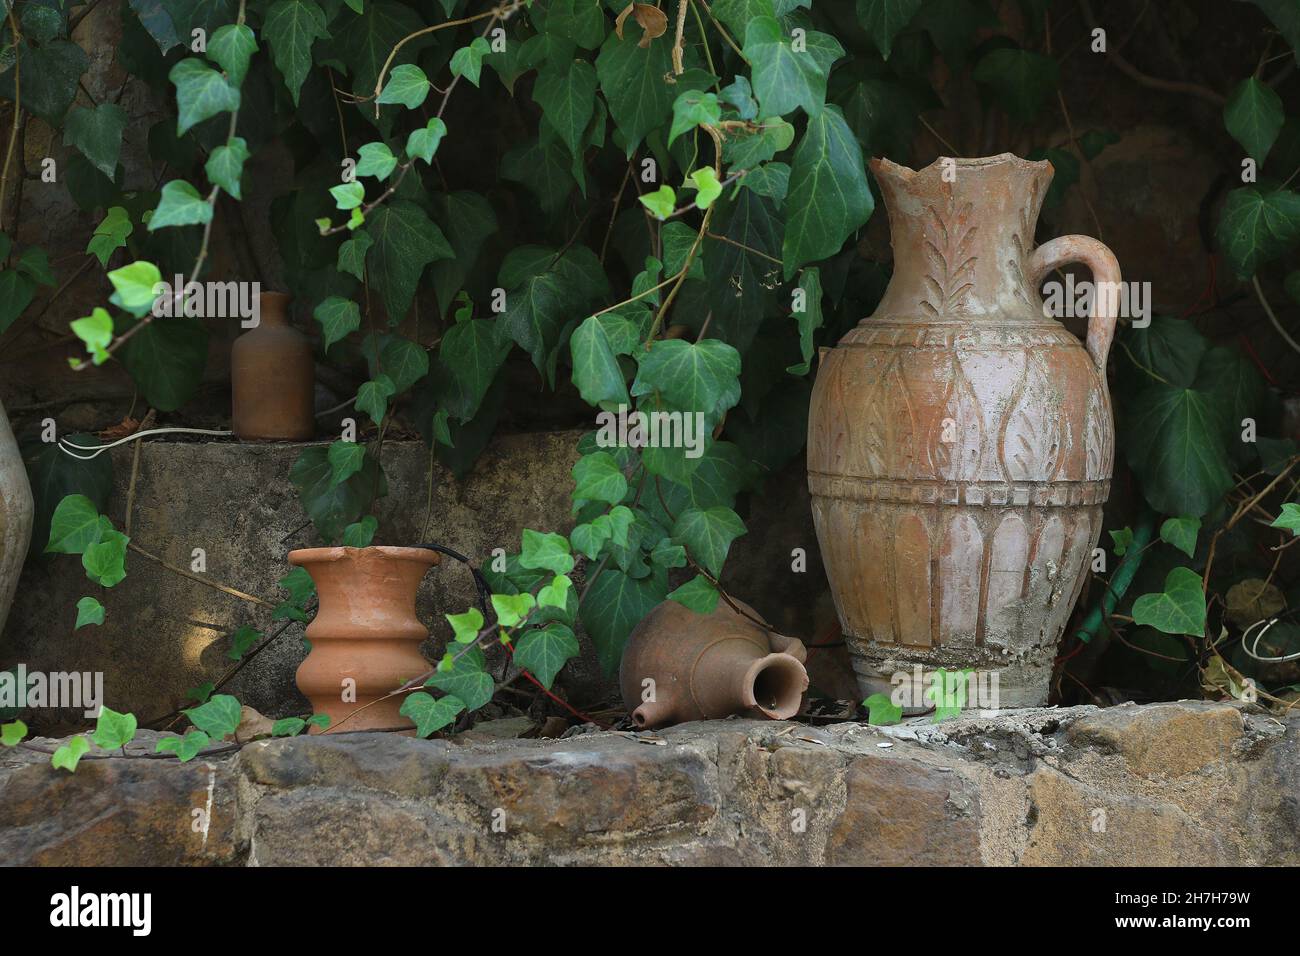 Lebanese terracotta jars in the garden among green leaves. Stock Photo